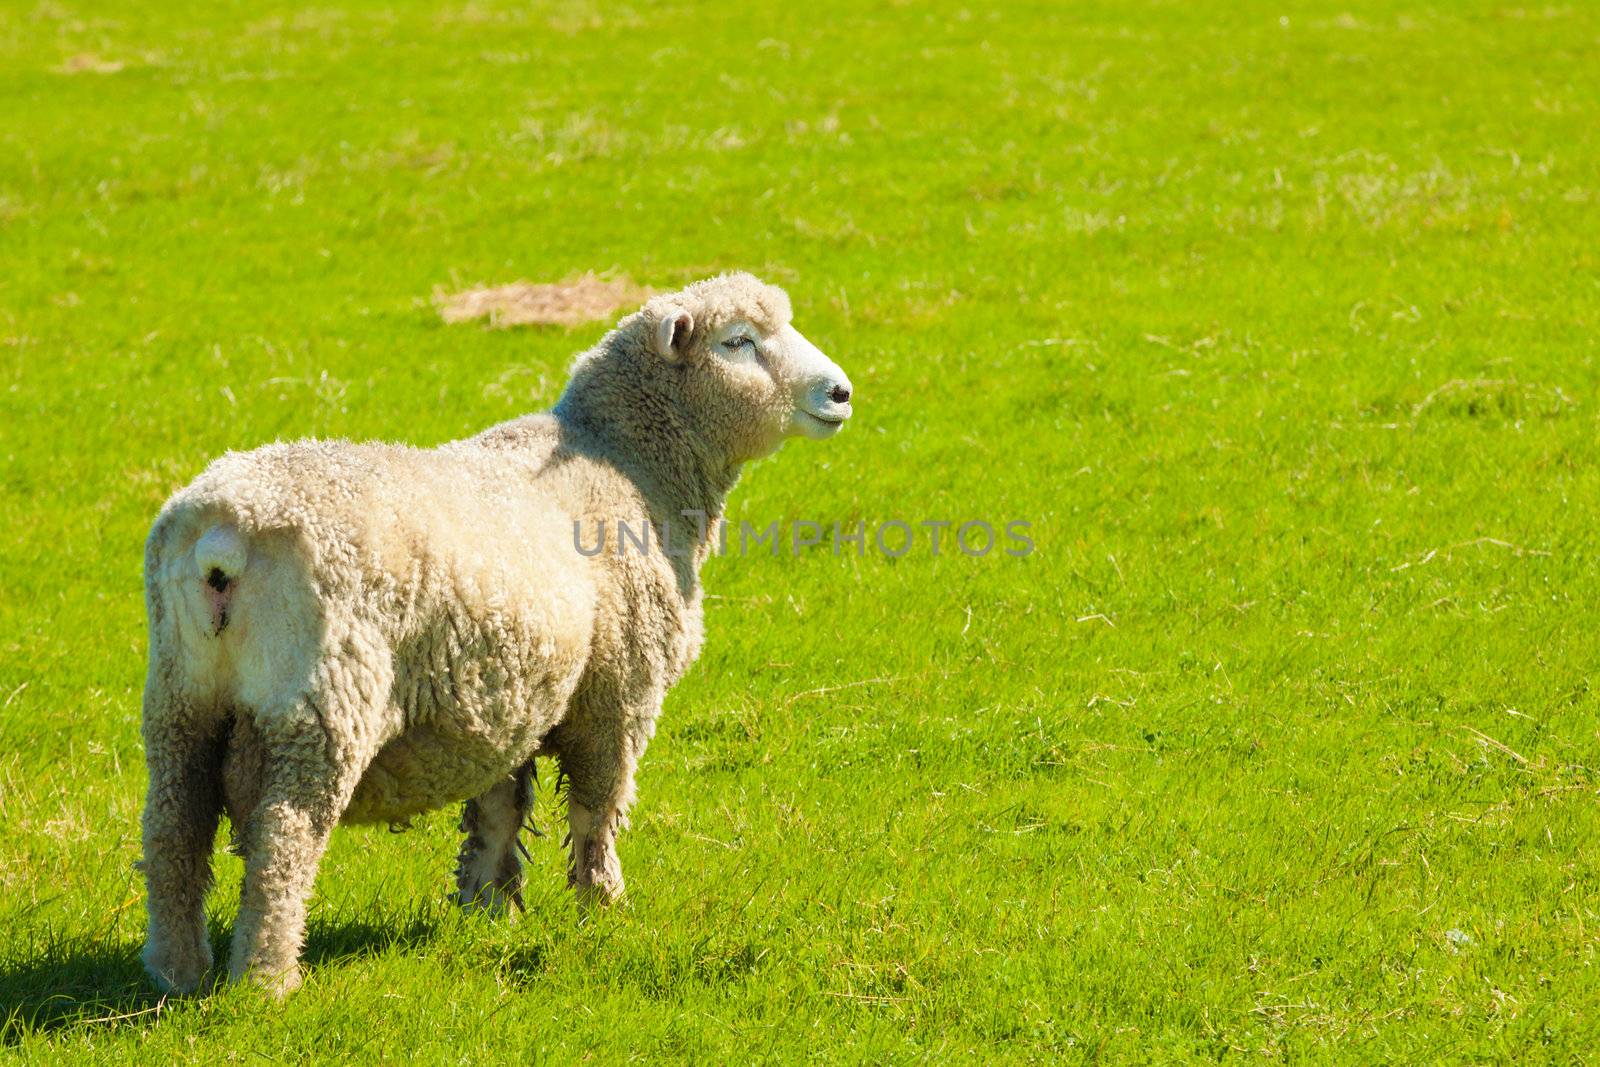 Sheep in a green field by Jaykayl